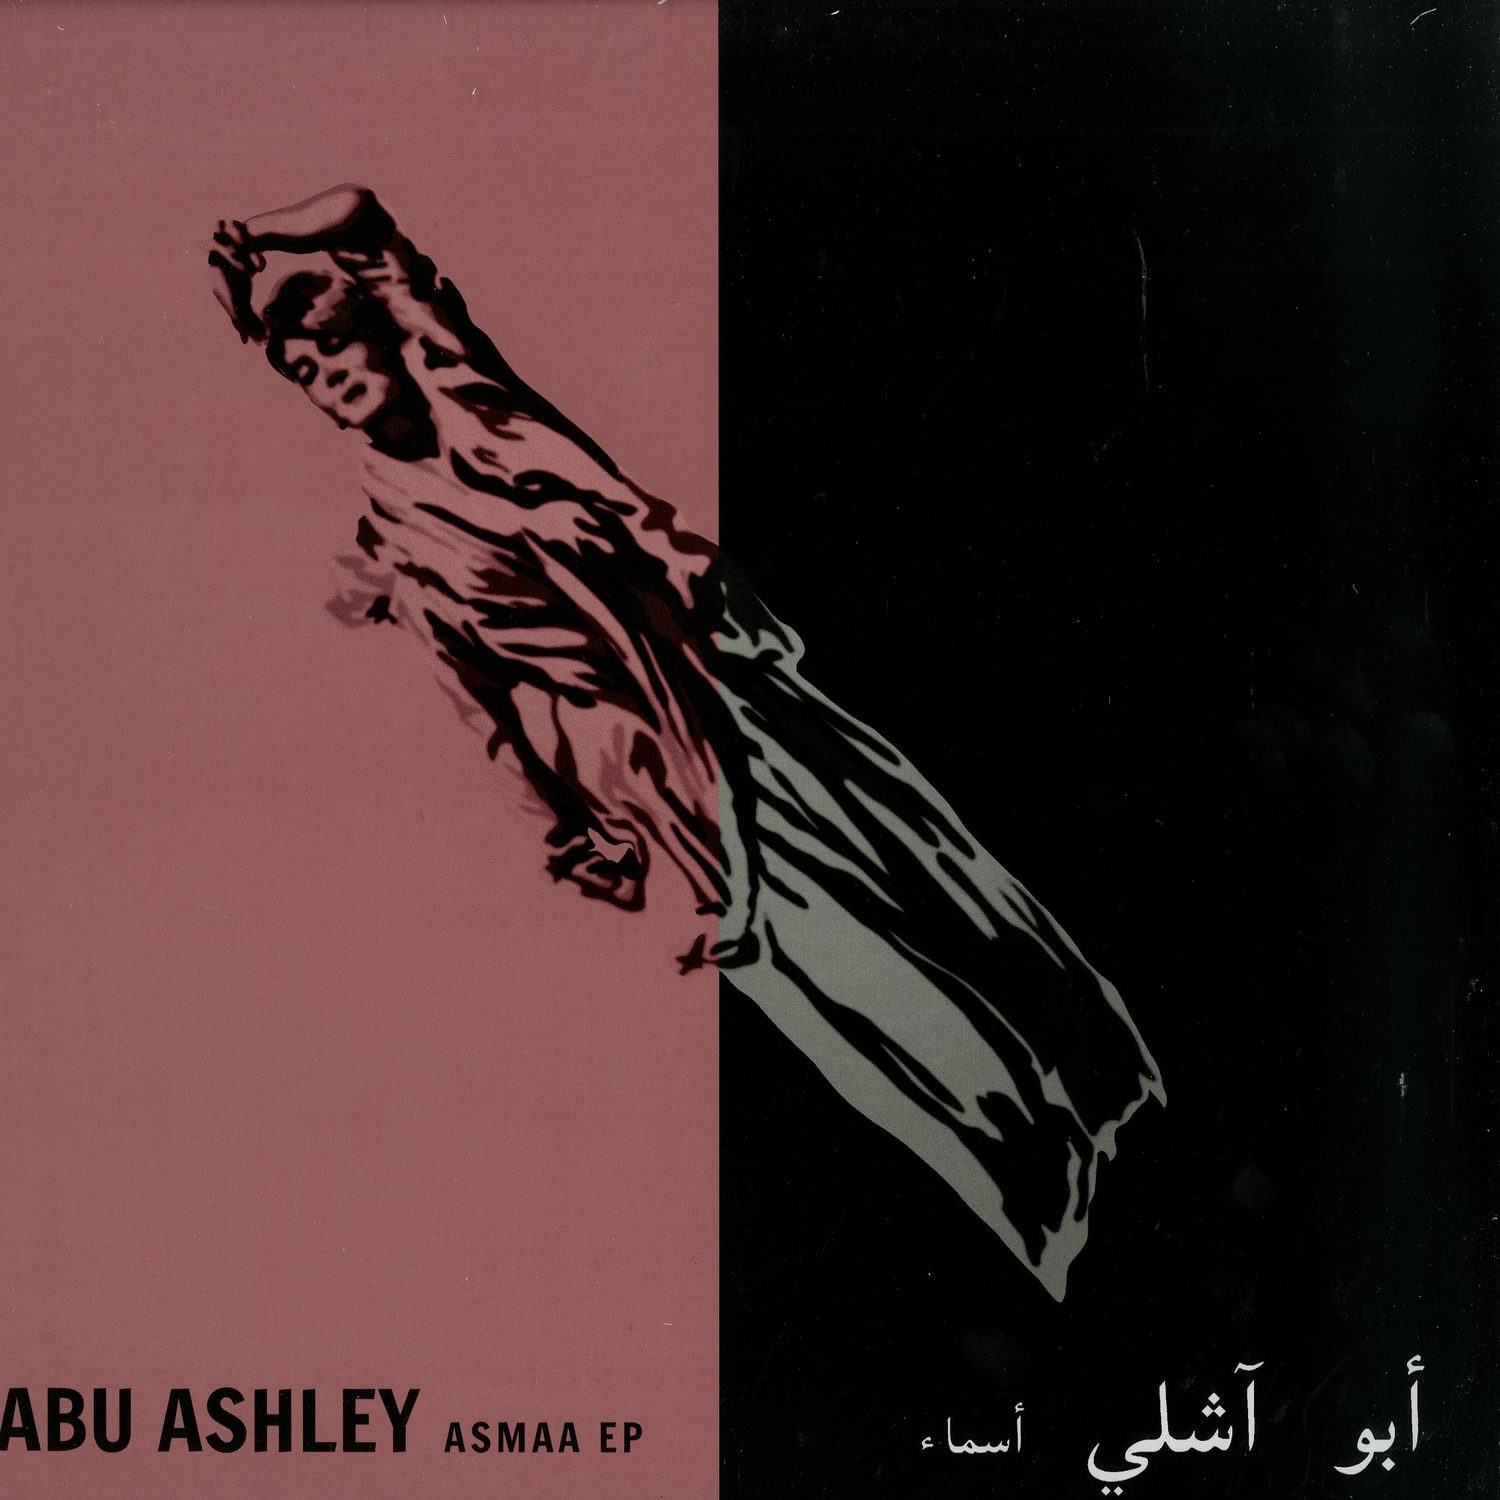 Abu Ashley - ASMAA EP 